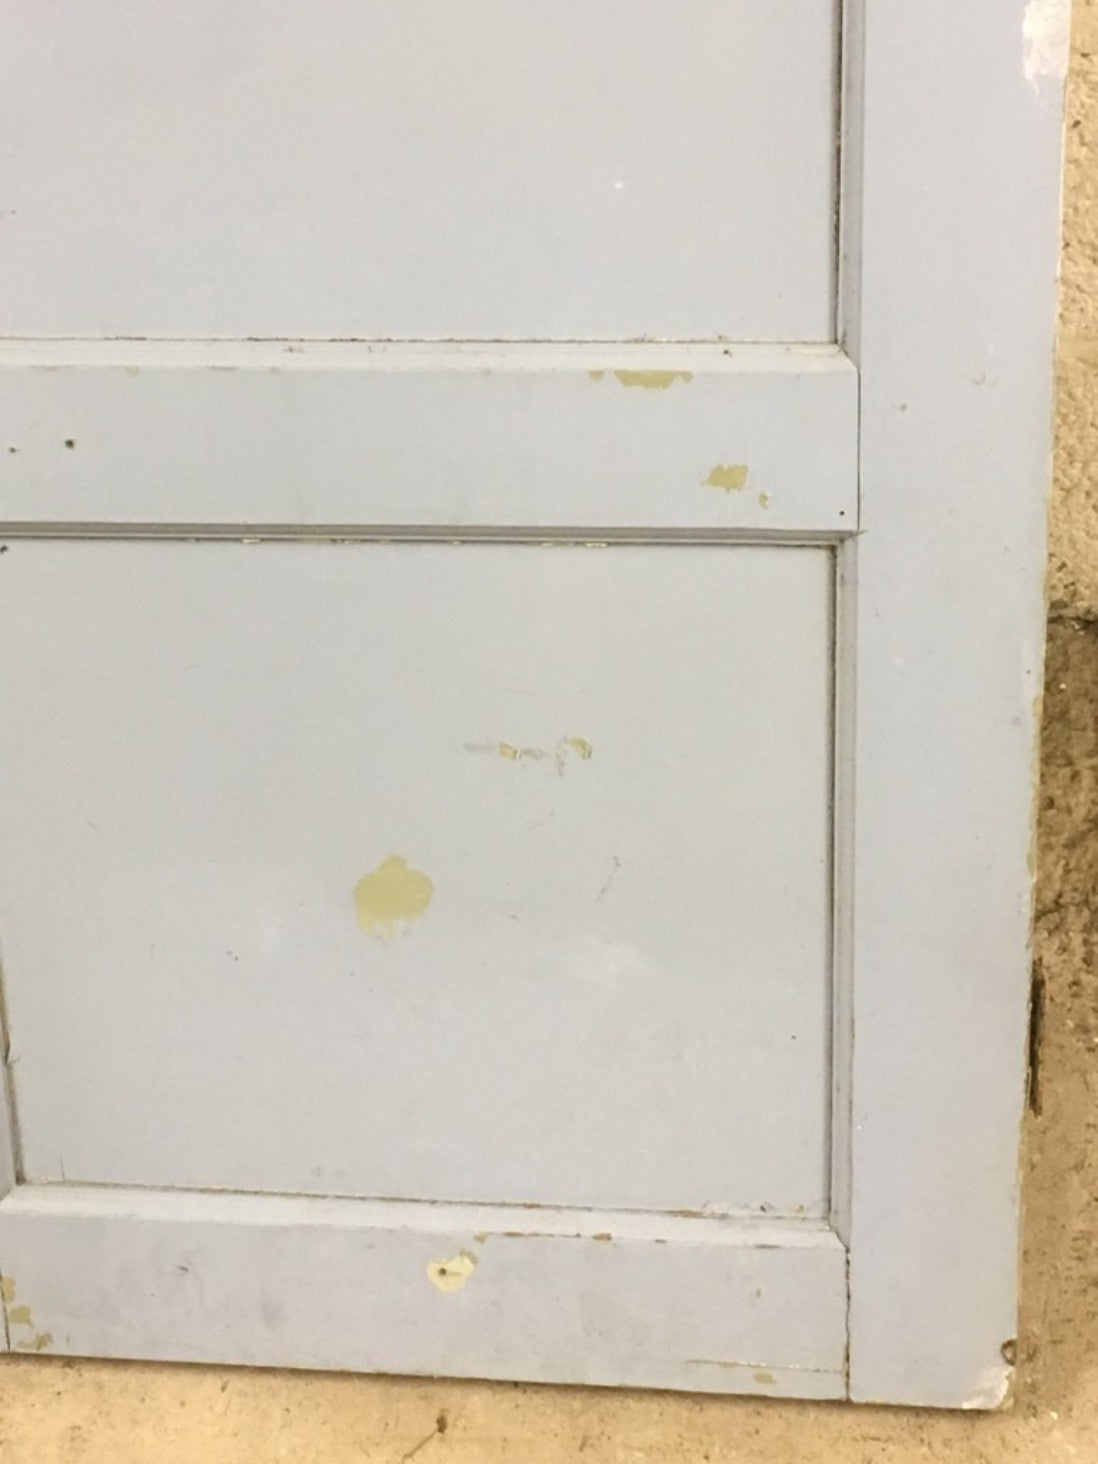 23 3/4”x38 1/2” Reclaimed 1970s Painted Pine Two Panel 1 Over 1 Internal Door